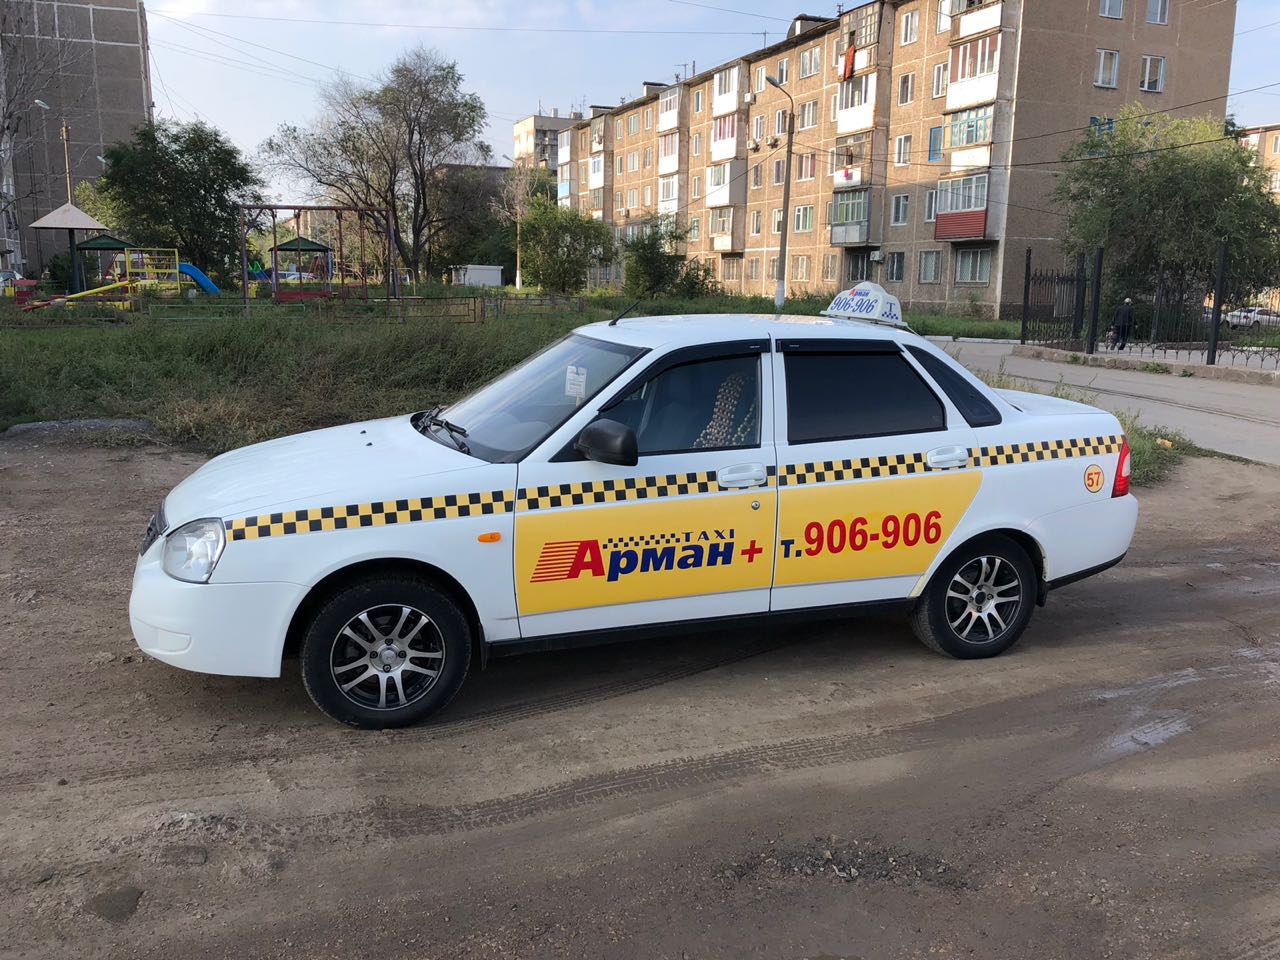 Карагандинская область, г.Темиртау. Такси «Арман», ИП «Иванов»